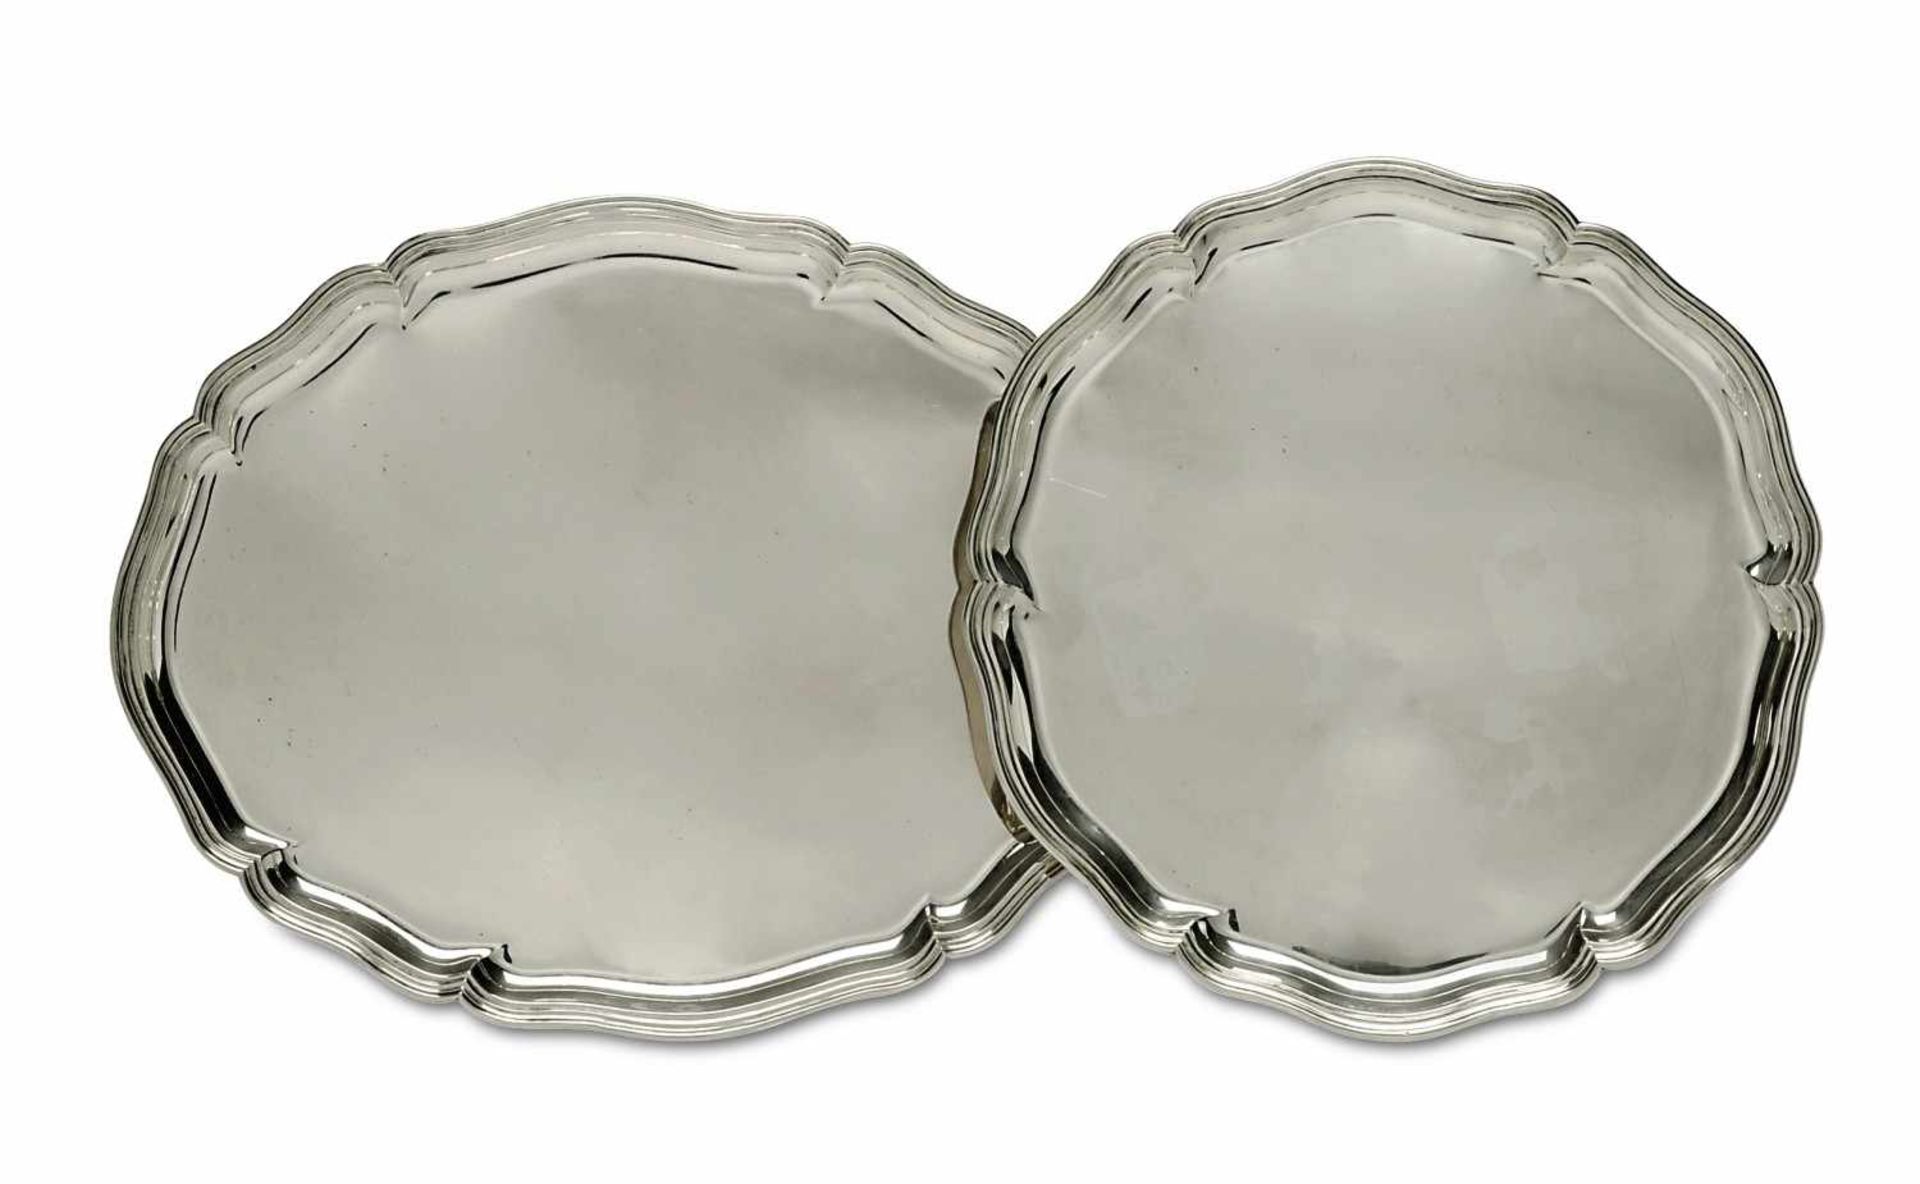 Rundes und ovales TablettDeutsch (wohl Wilkens)Silber. Profilierter geschweifter Rand bzw.